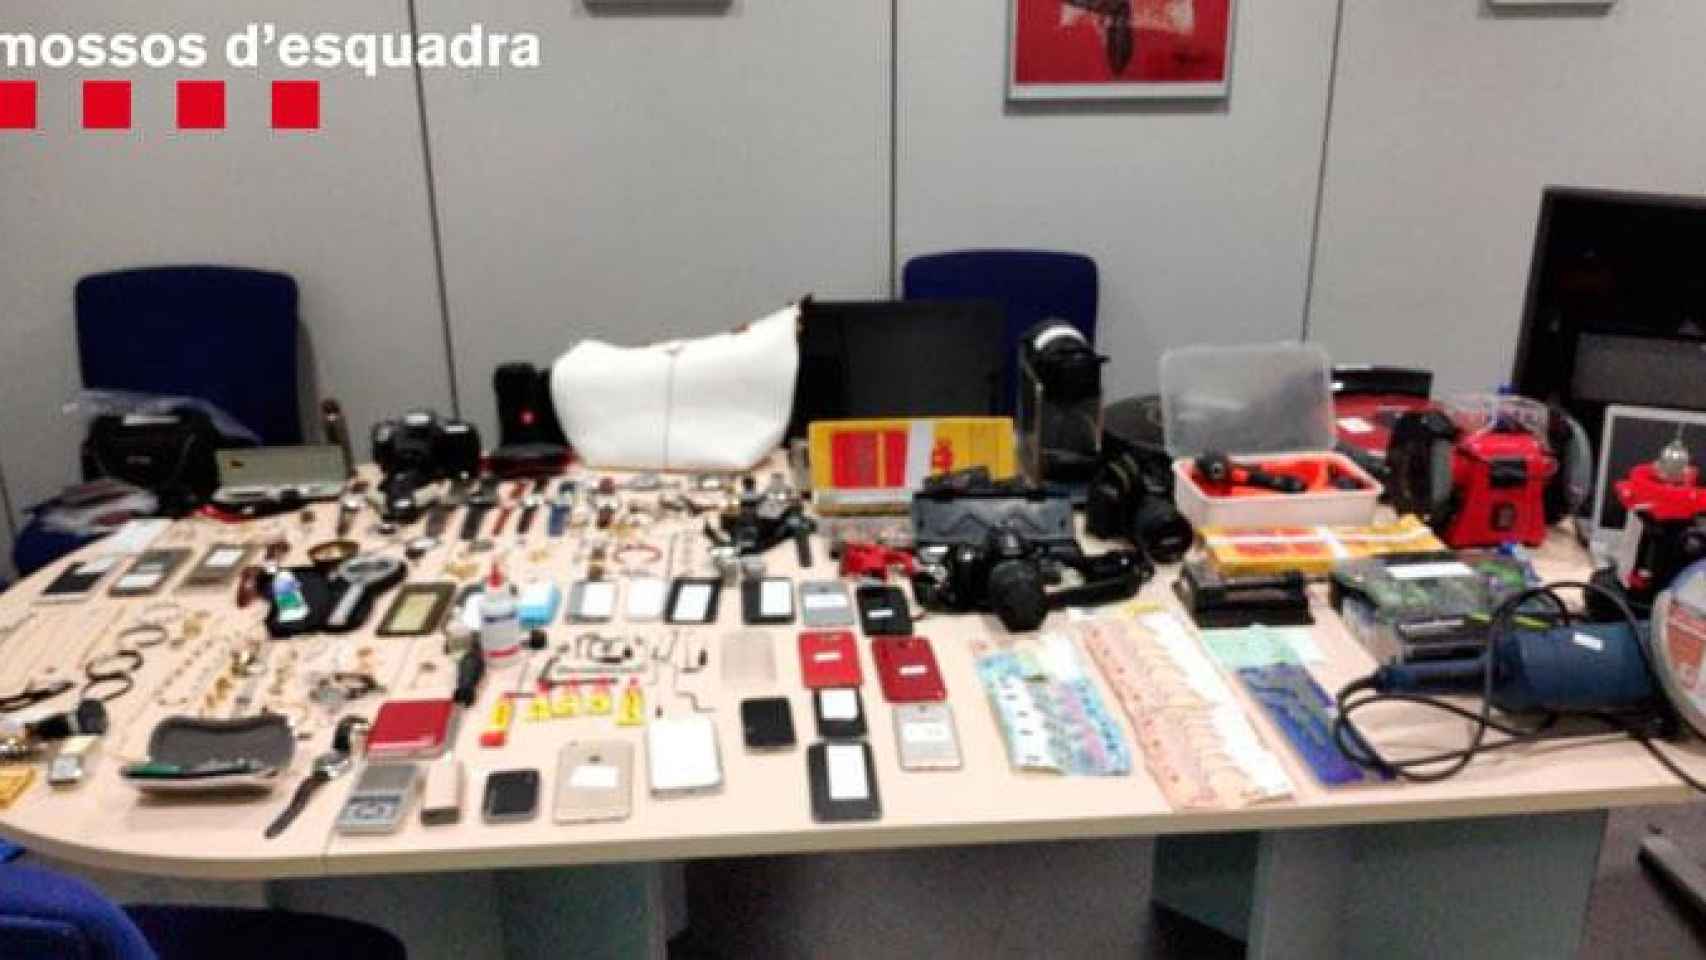 Cae una banda por robos a domicilios en Barcelona / MOSSOS D'ESQUADRA